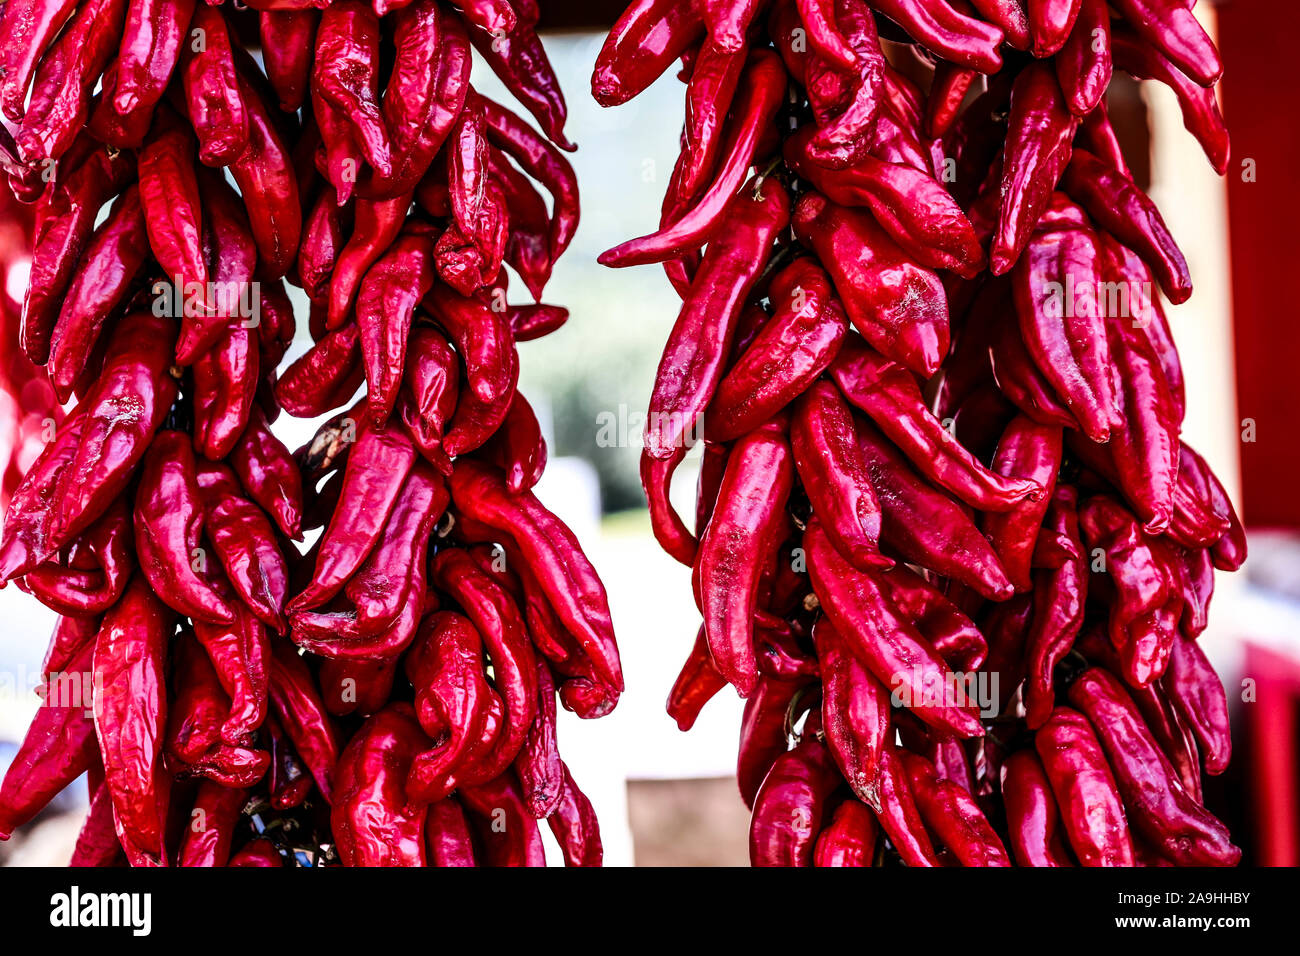 Ristras of red chile in the town Mazocahui, is part of the route of the Sonora River, Mexico. Gastronomy and Sonoran tradition. food, vegetables, red, enchiloso, © (© Photo: LuisGutierrez / NortePhoto.com)  Ristras de chile colorado en el pueblo Mazocahui, forma parte de la ruta del Río Sonora, Mexico. Gastronomía y tradición sonorense. alimentos, vegetales, color rojo, enchiloso, © (© Photo: LuisGutierrez / NortePhoto.com) Stock Photo